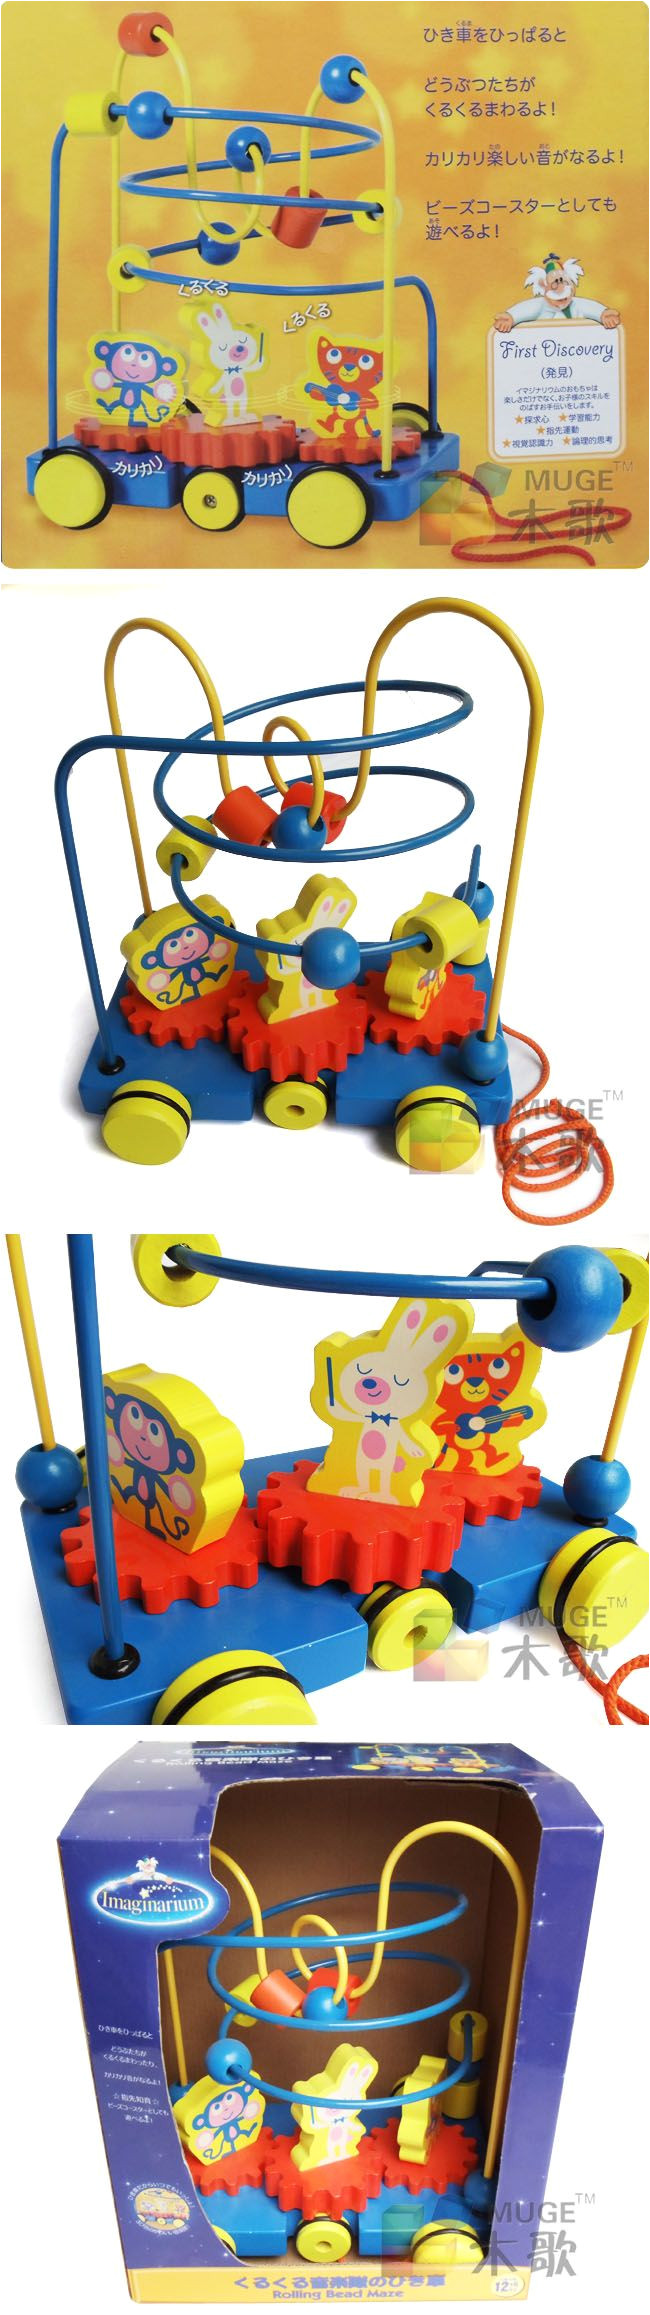 imaginarium juguete de madera barrowload alrededor de la cuenta en kits de construcciones de juguetes y wooden toysalrededoralibaba groupkids